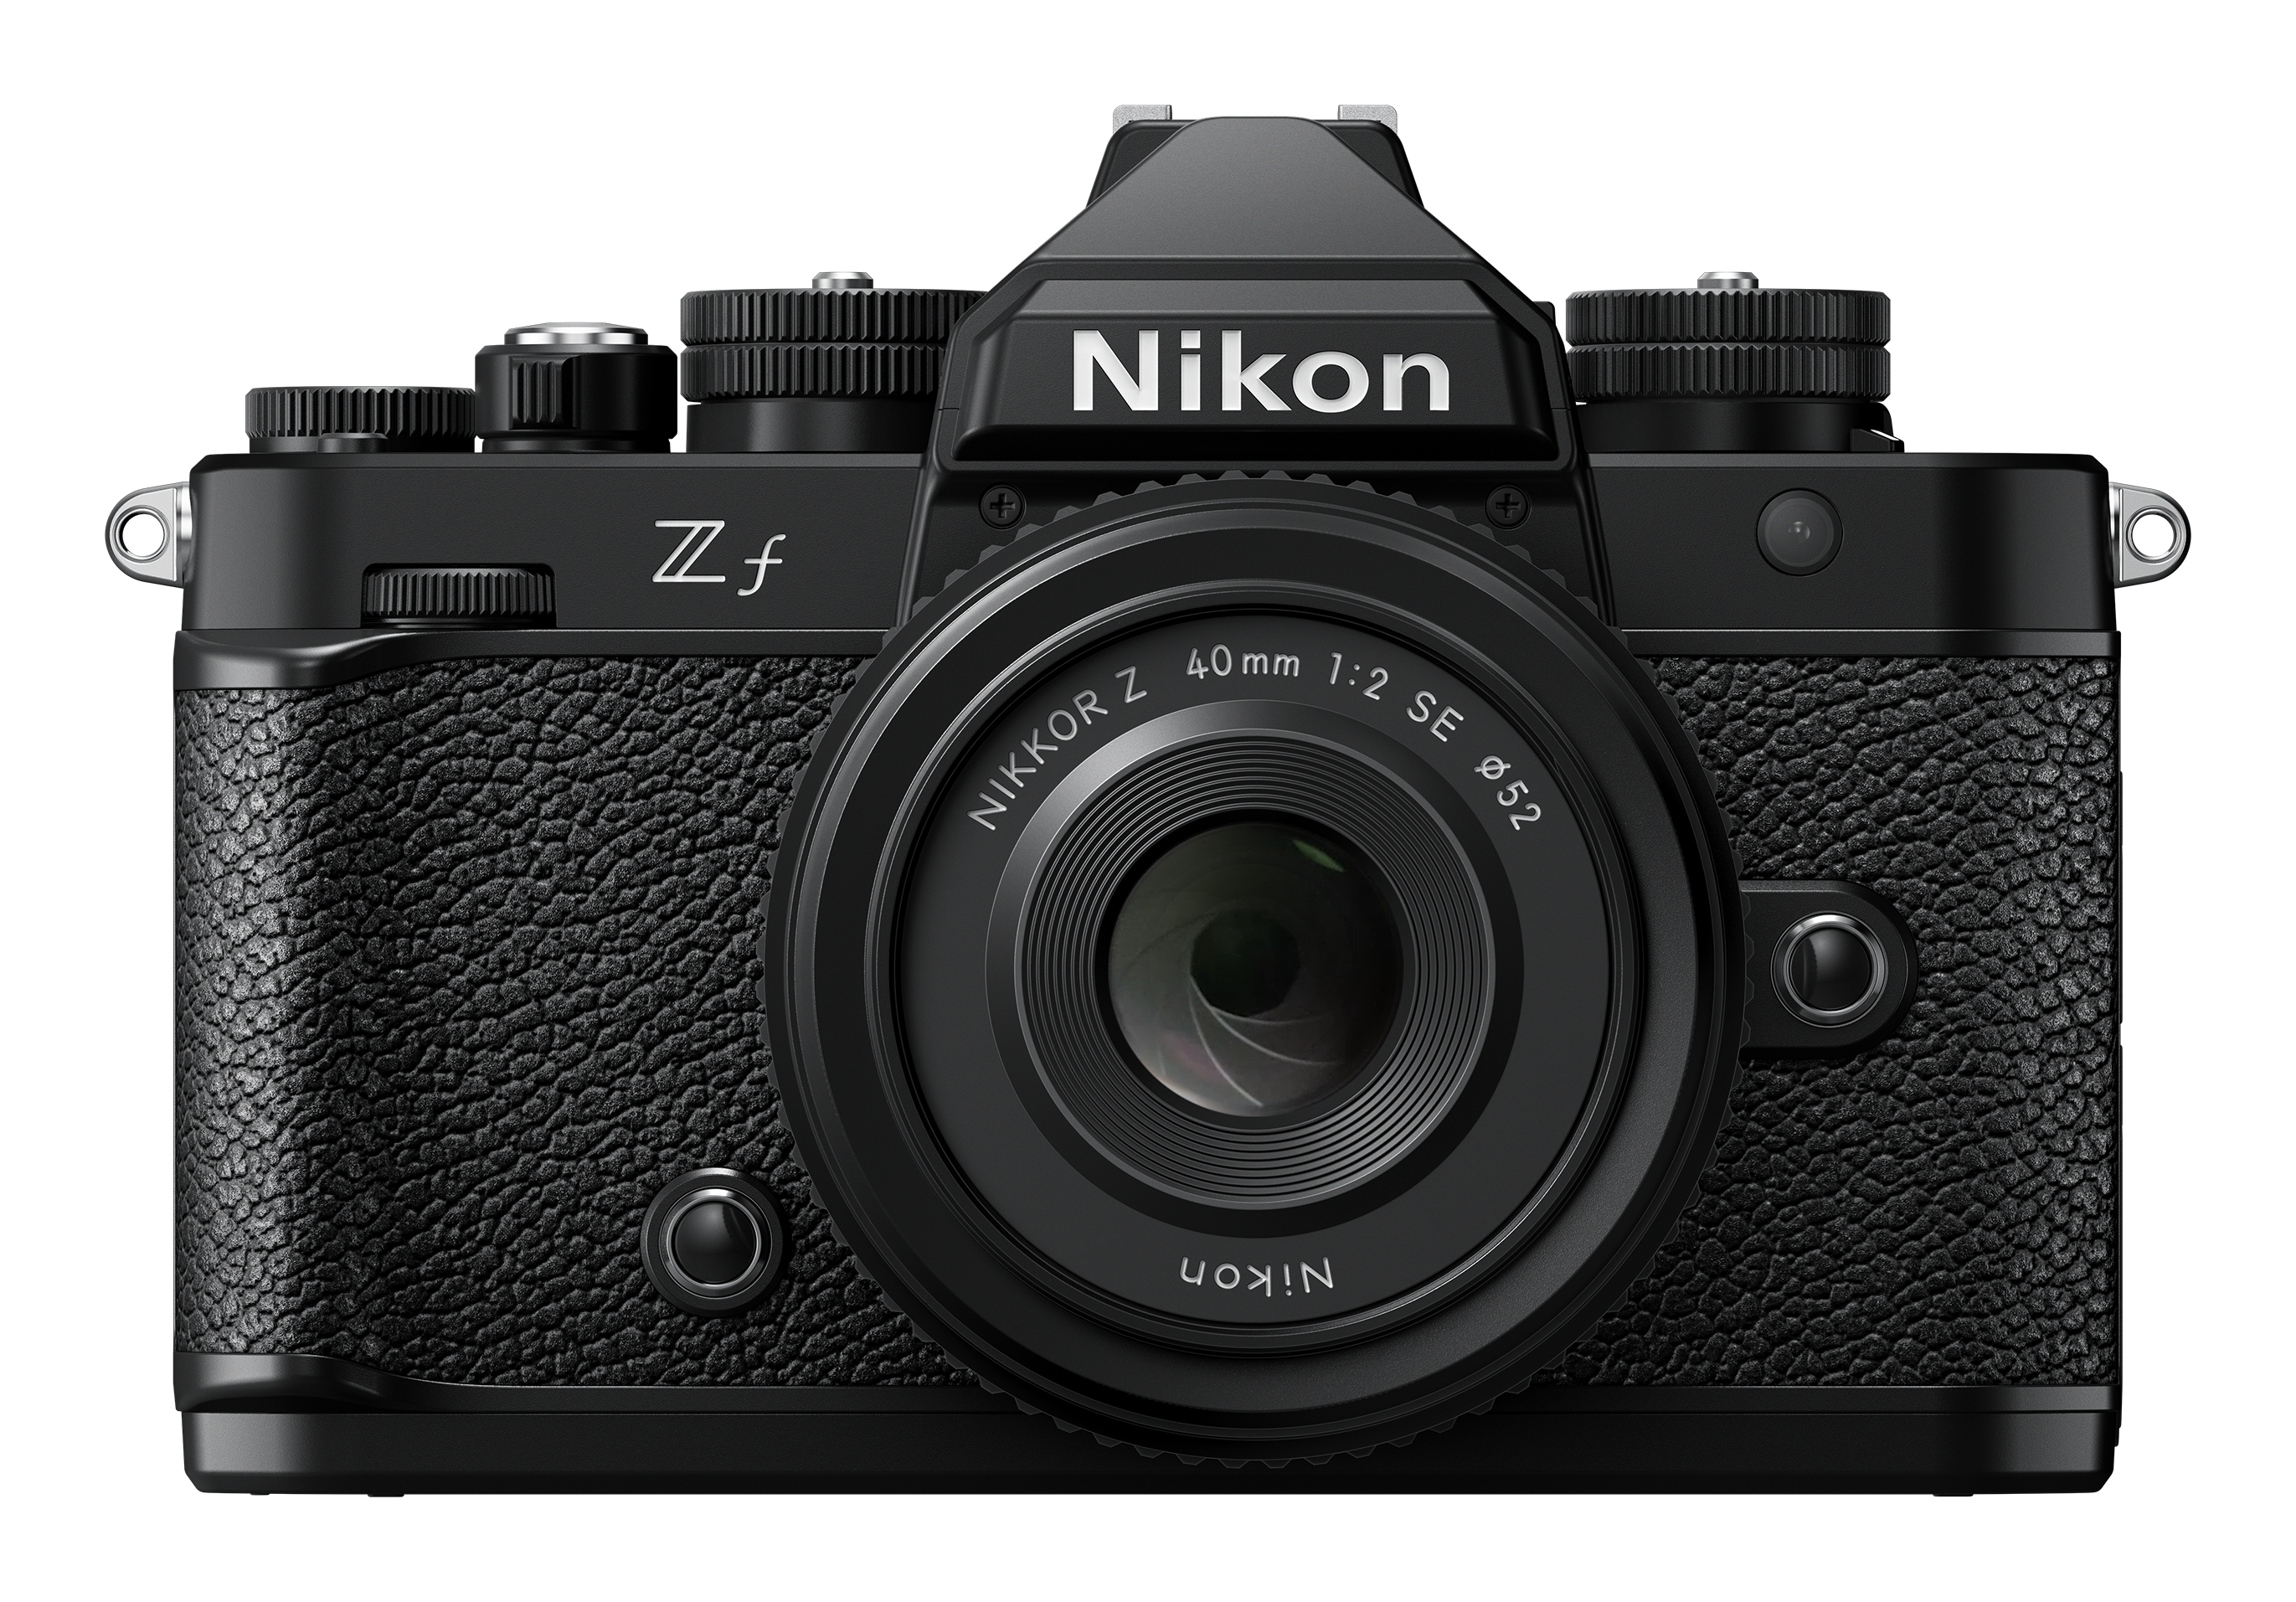 Nikon ZF + 24-70MM F4 SD 128GB 667 Pro -Gar. Nital 4 anni - Cine Sud è 47 anni sul mercato! NMZ595